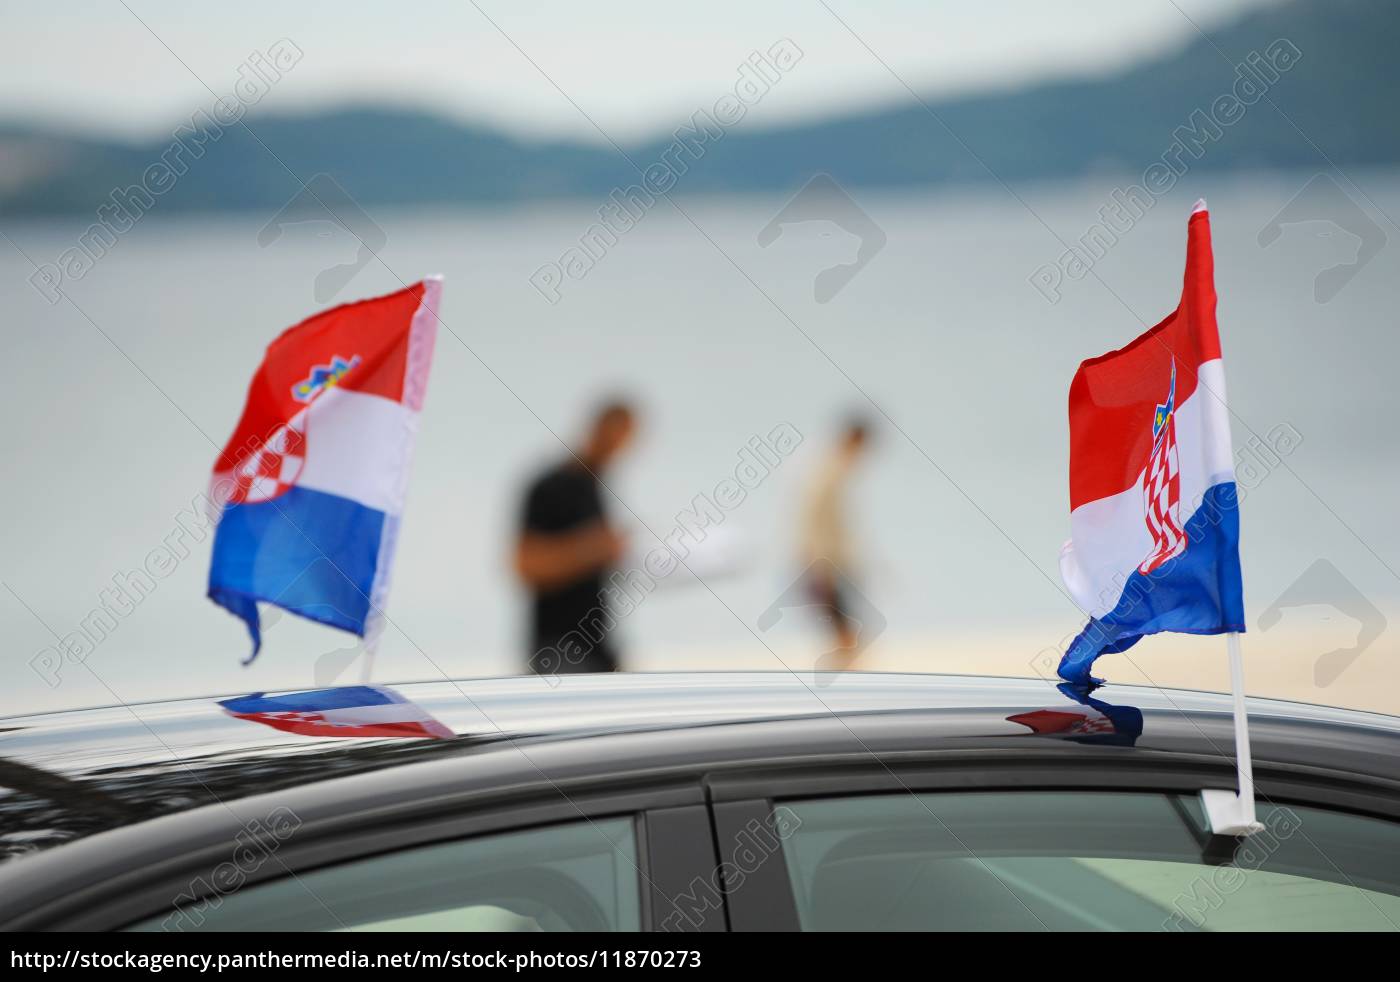 https://mh-2-bildagentur.panthermedia.net/media/previews/0011000000/11870000/~kroatische-flagge-an-autofenster-befestigt_11870273_high.jpg